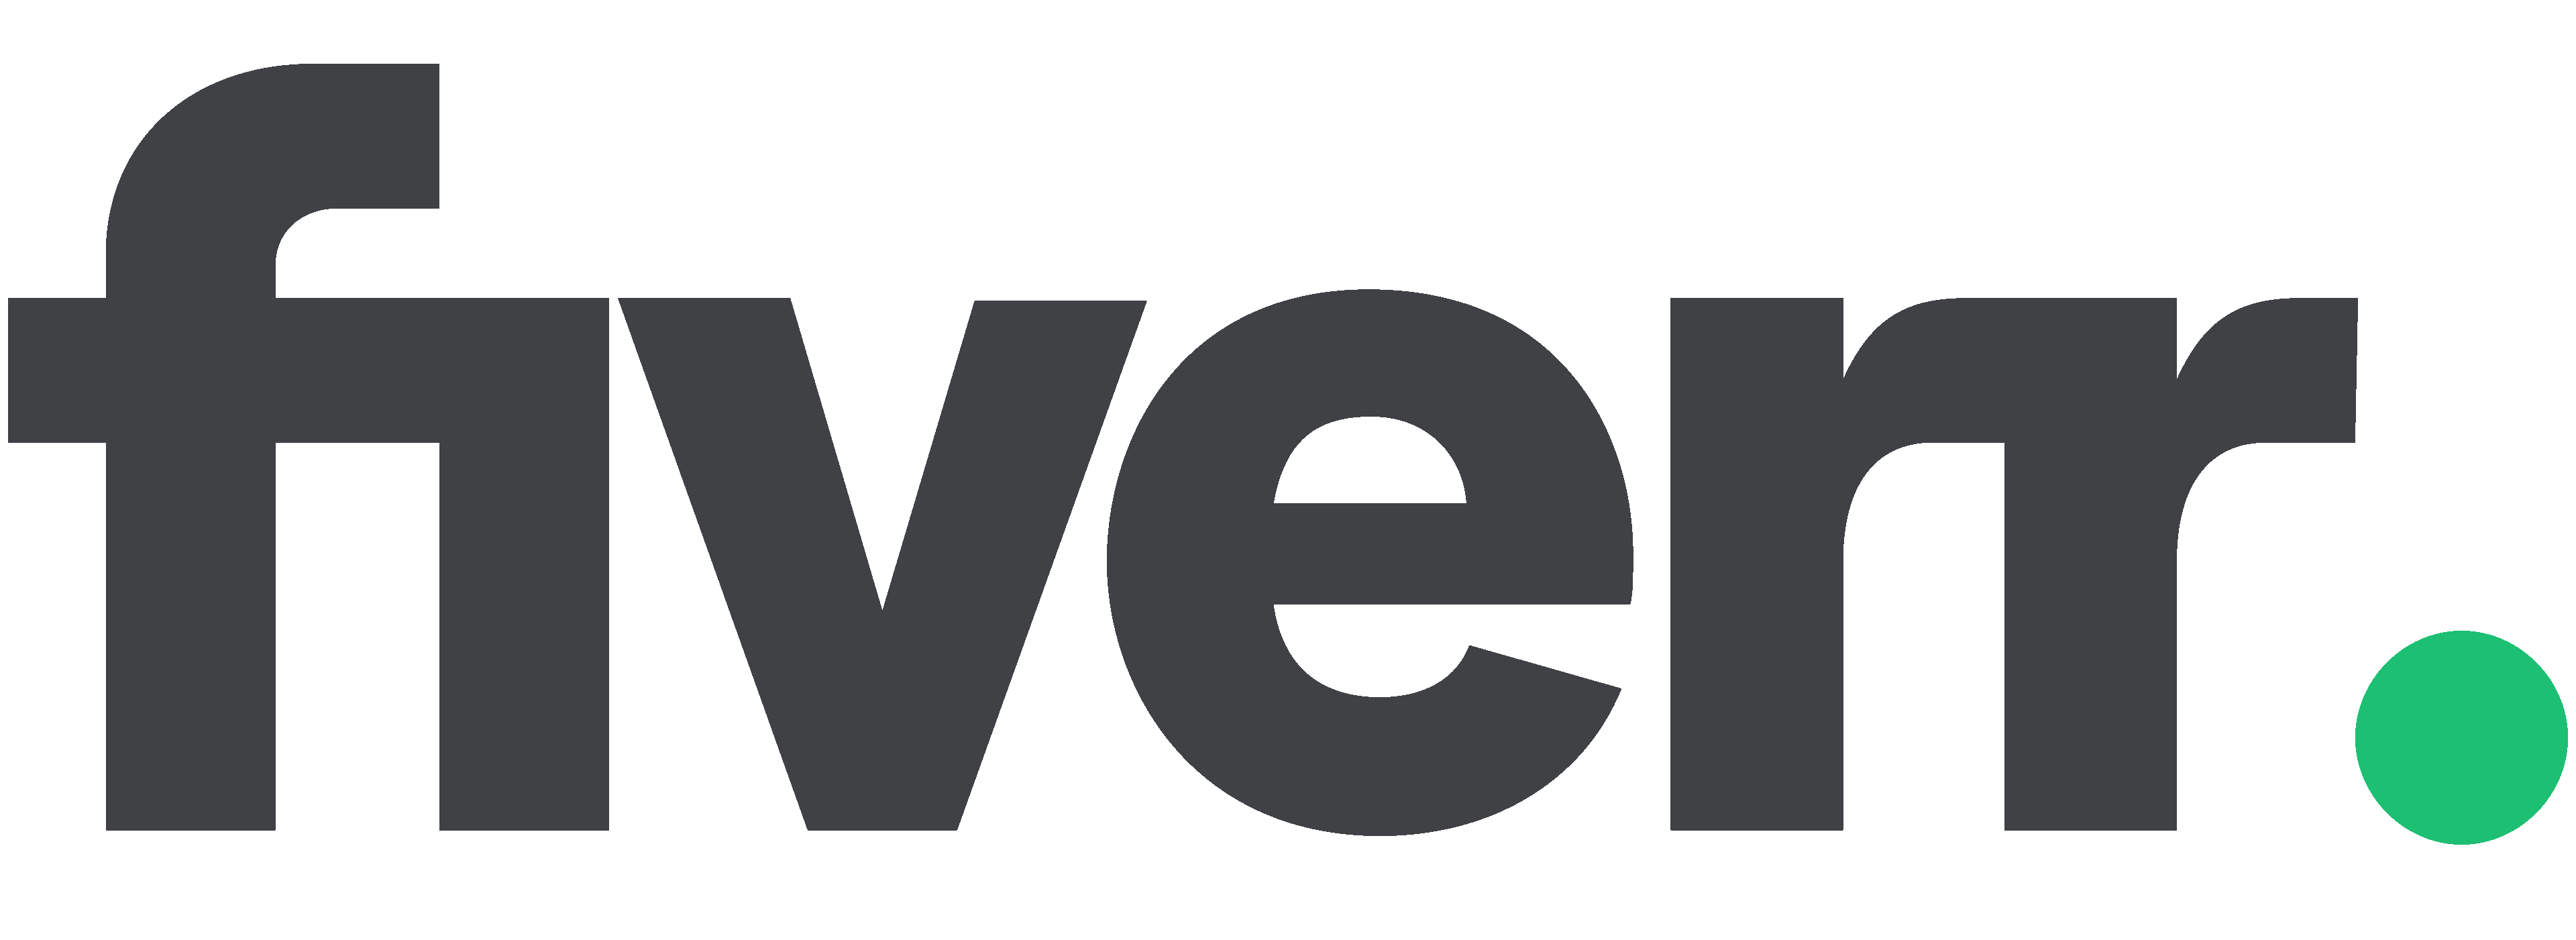 Fiverr Logo Small